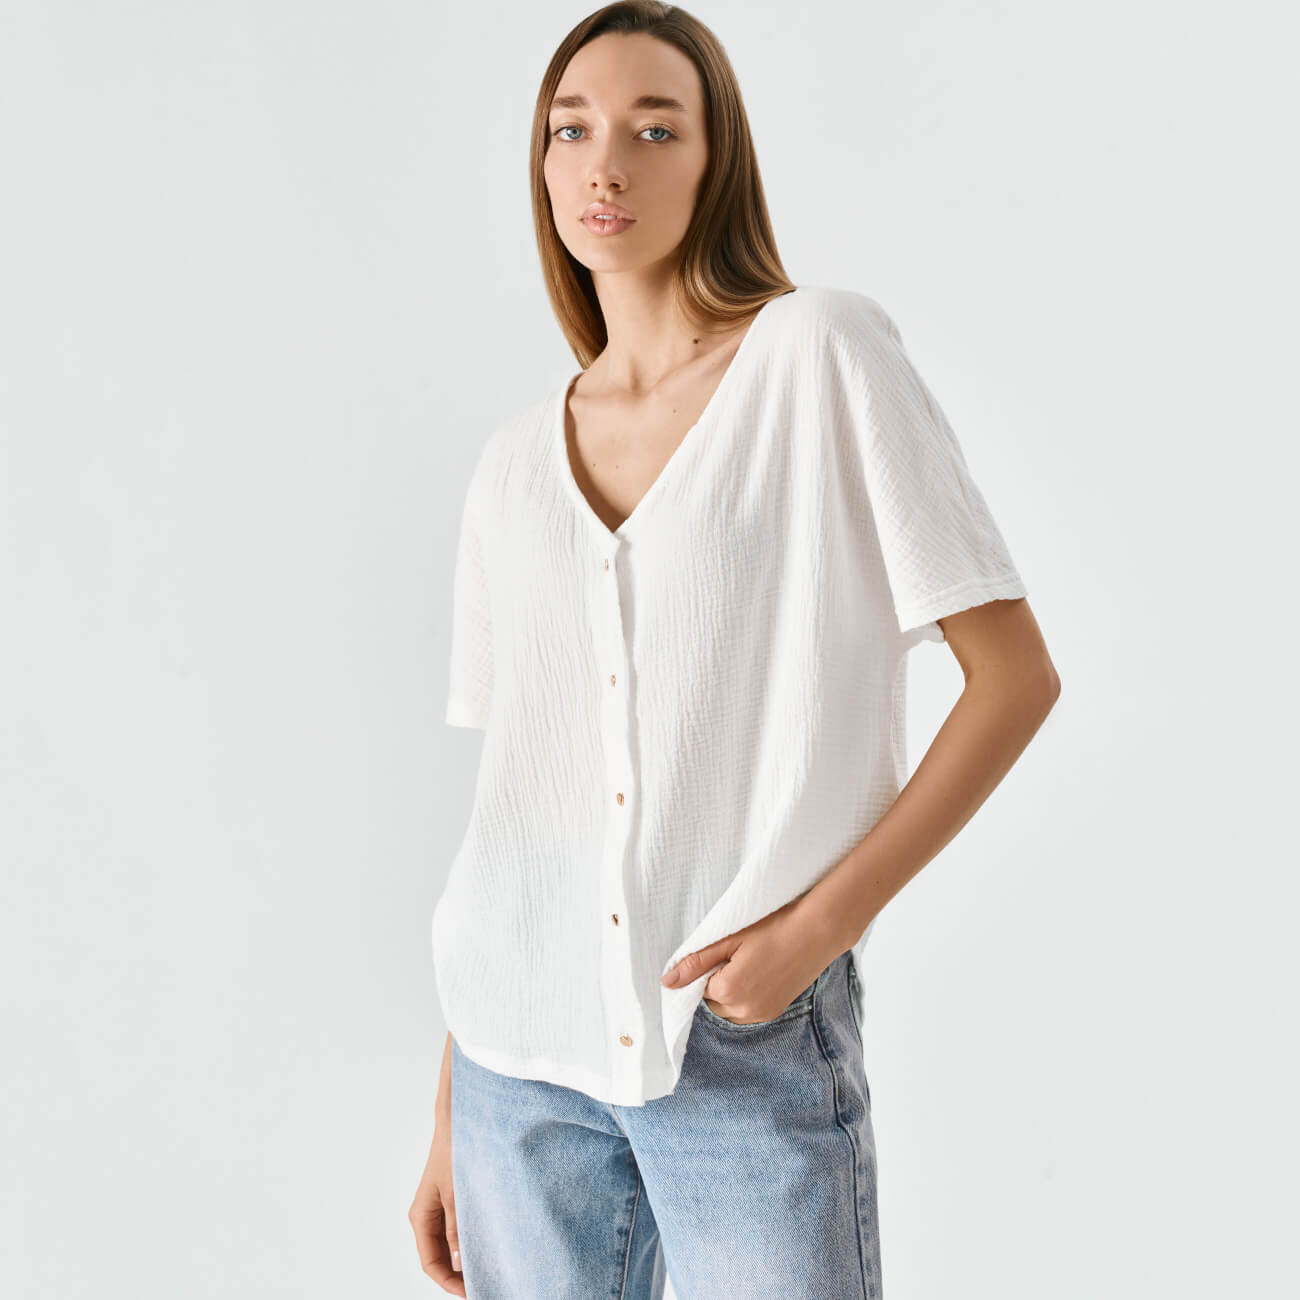 Рубашка женская, р. XL, с коротким рукавом, муслин, белая, Allison одноразовая женская бритва gillette venus 2 4 шт